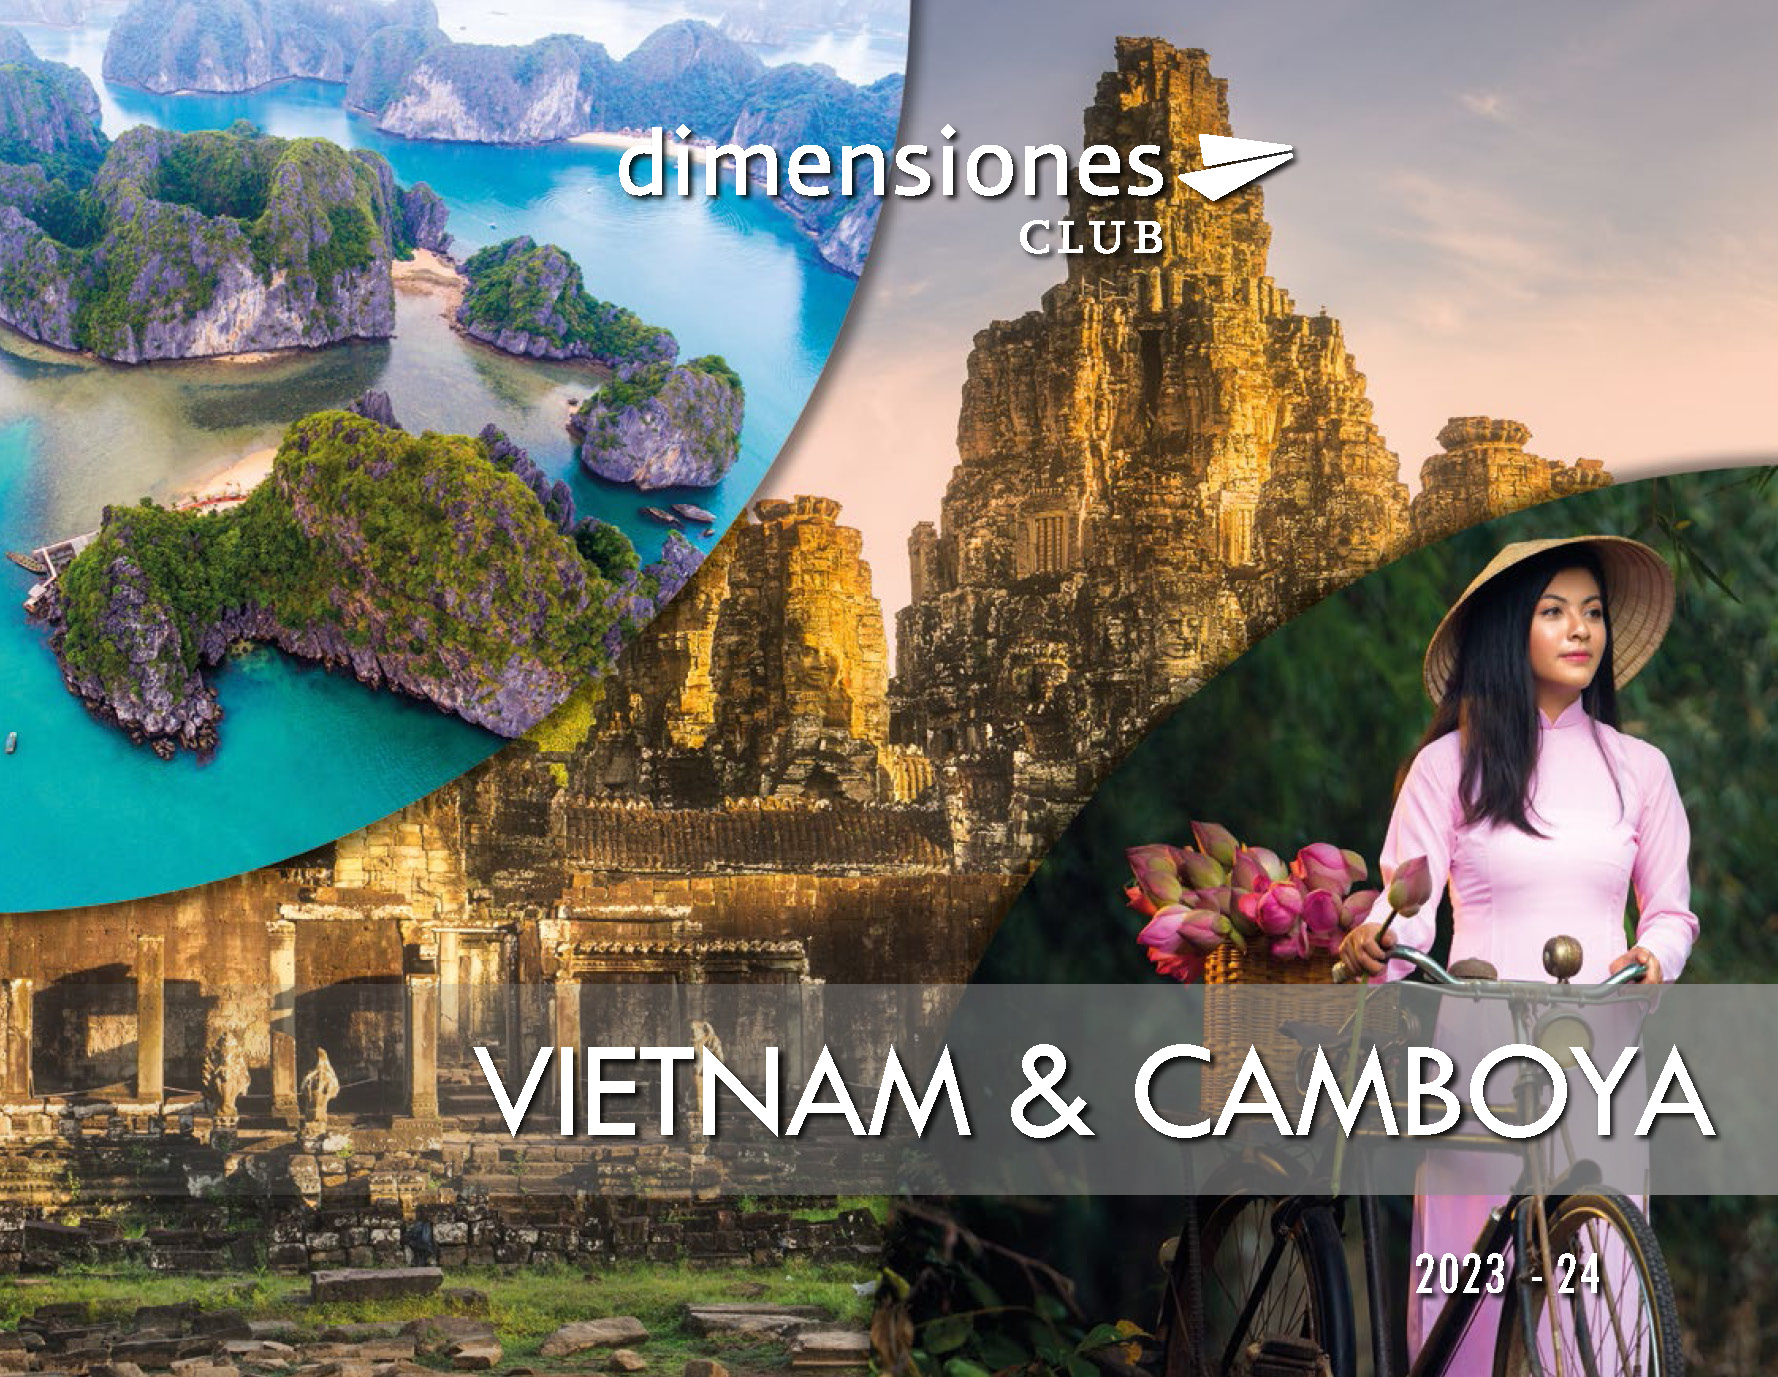 Catalogo Dimensiones Club Vietnam y Camboya 2023-2024